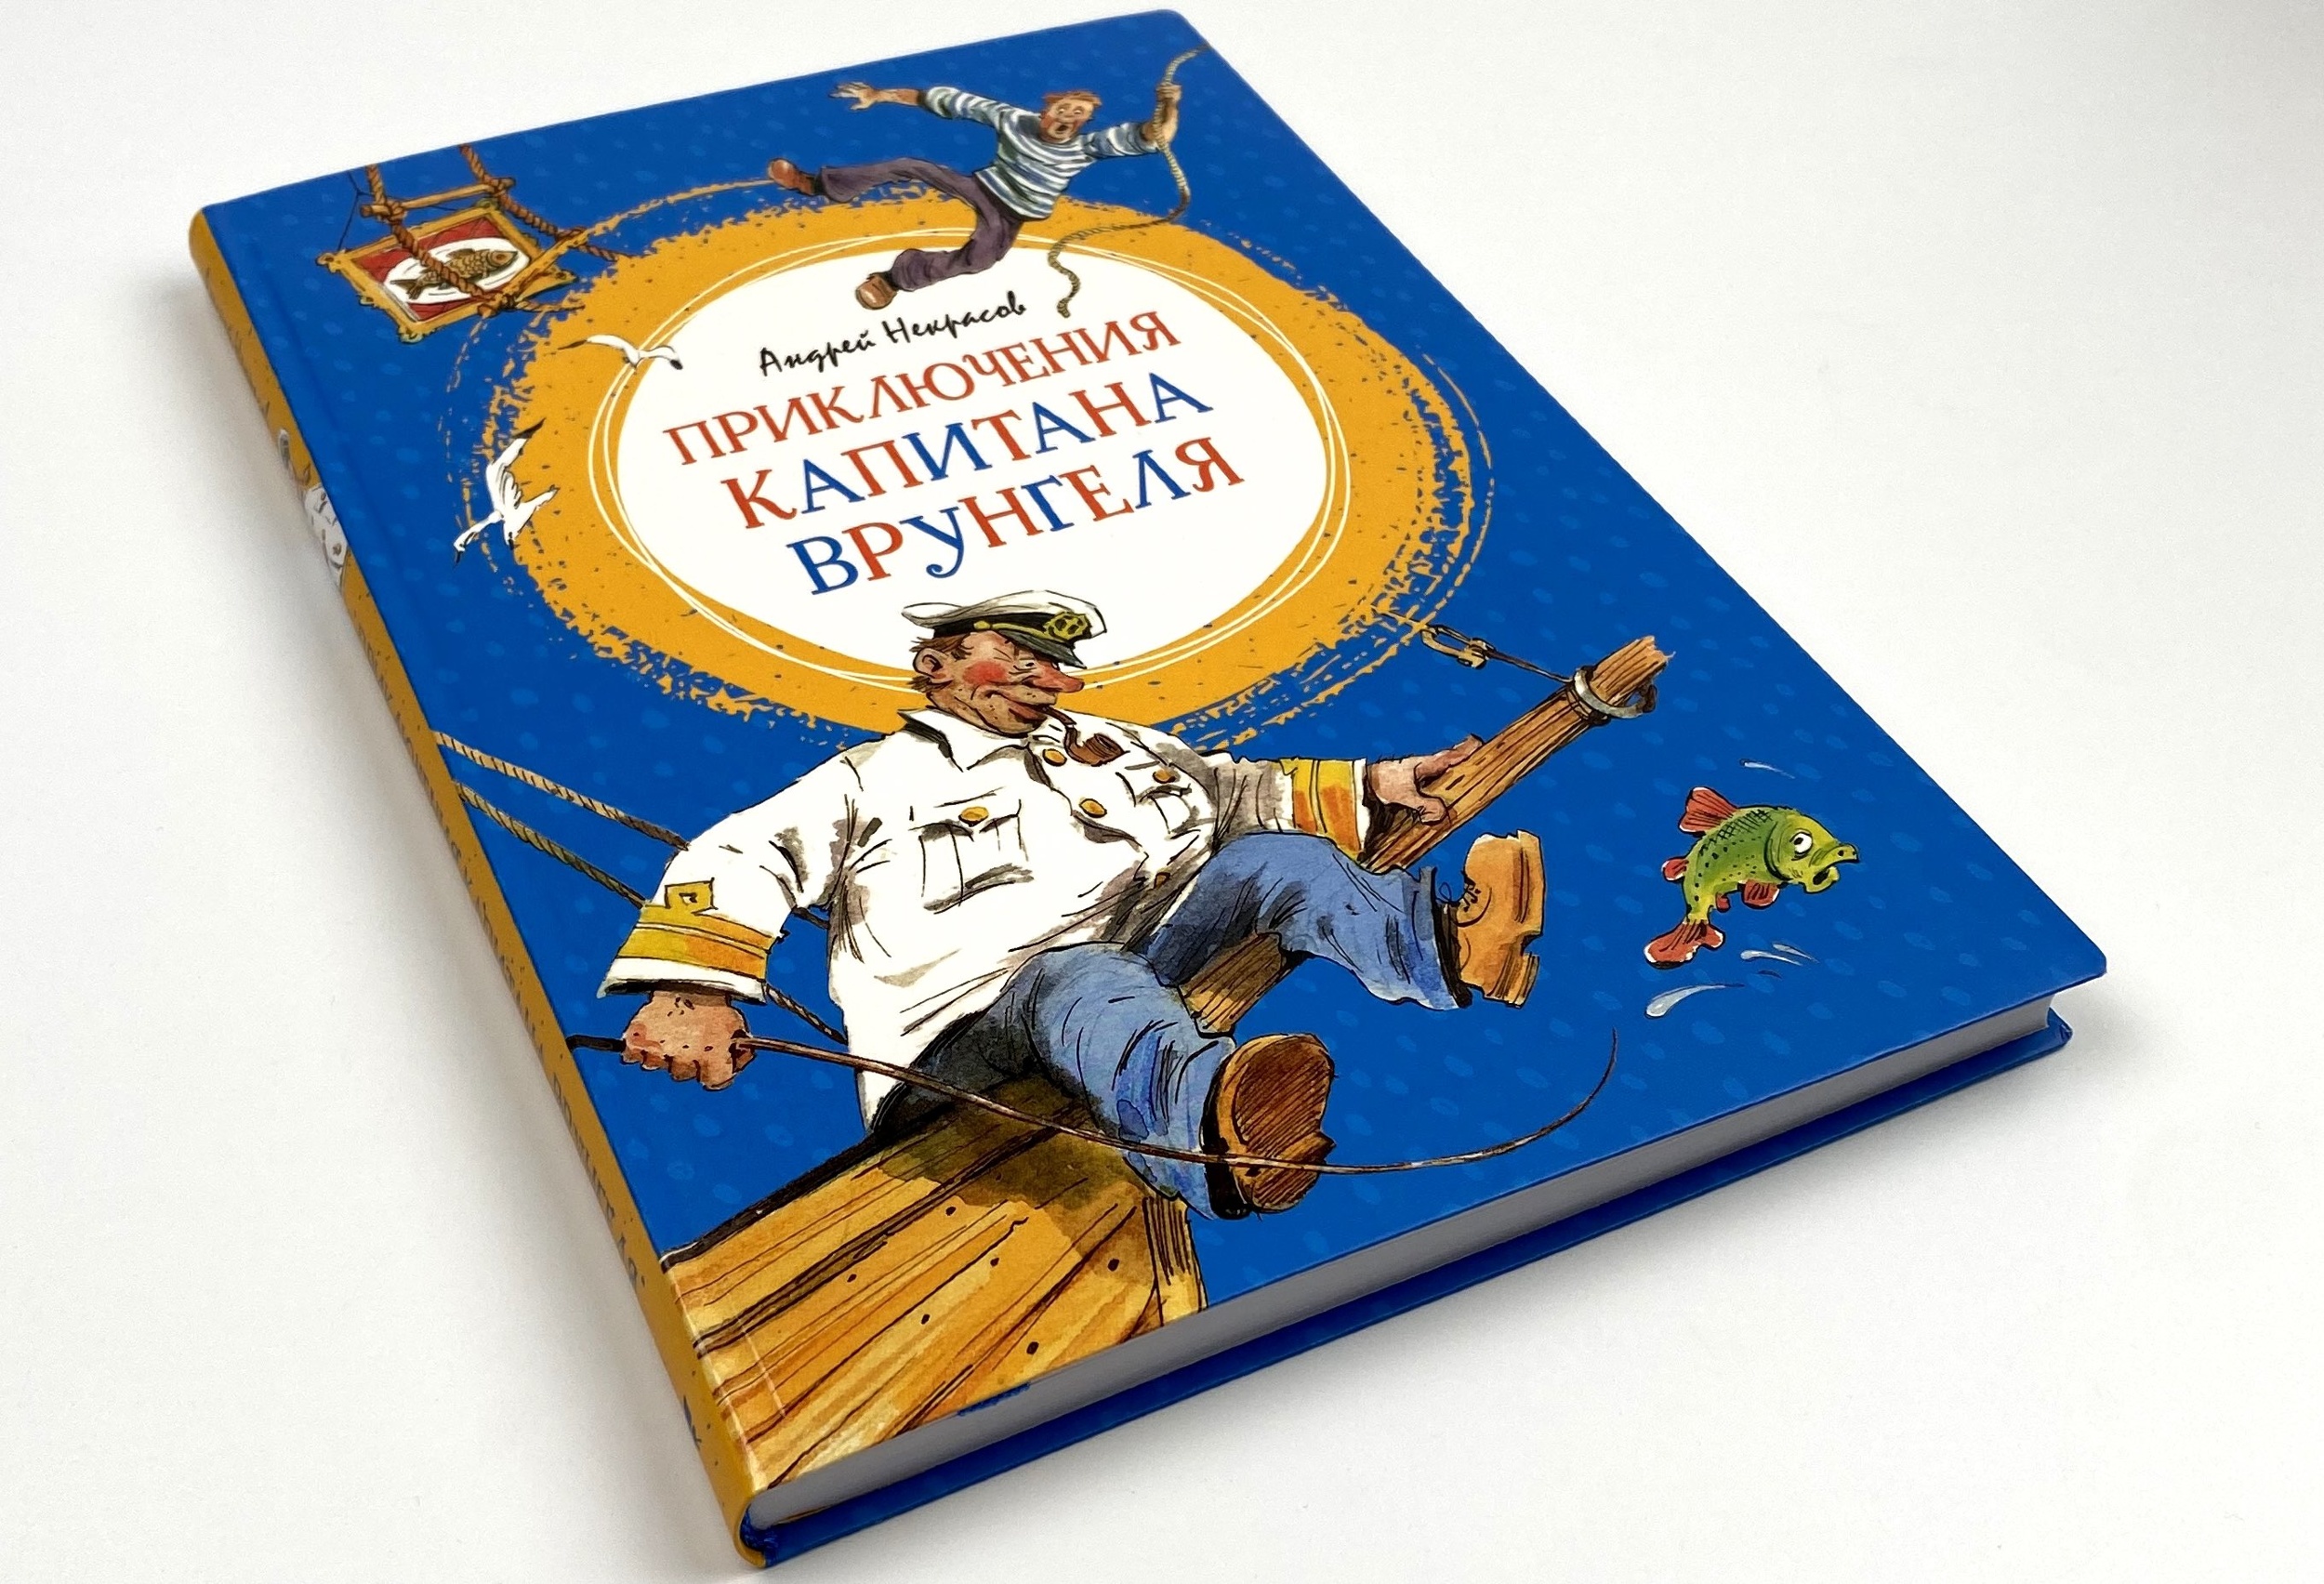 Приключения Капитана Врунгеля. Автор — Андрей Некрасов. 